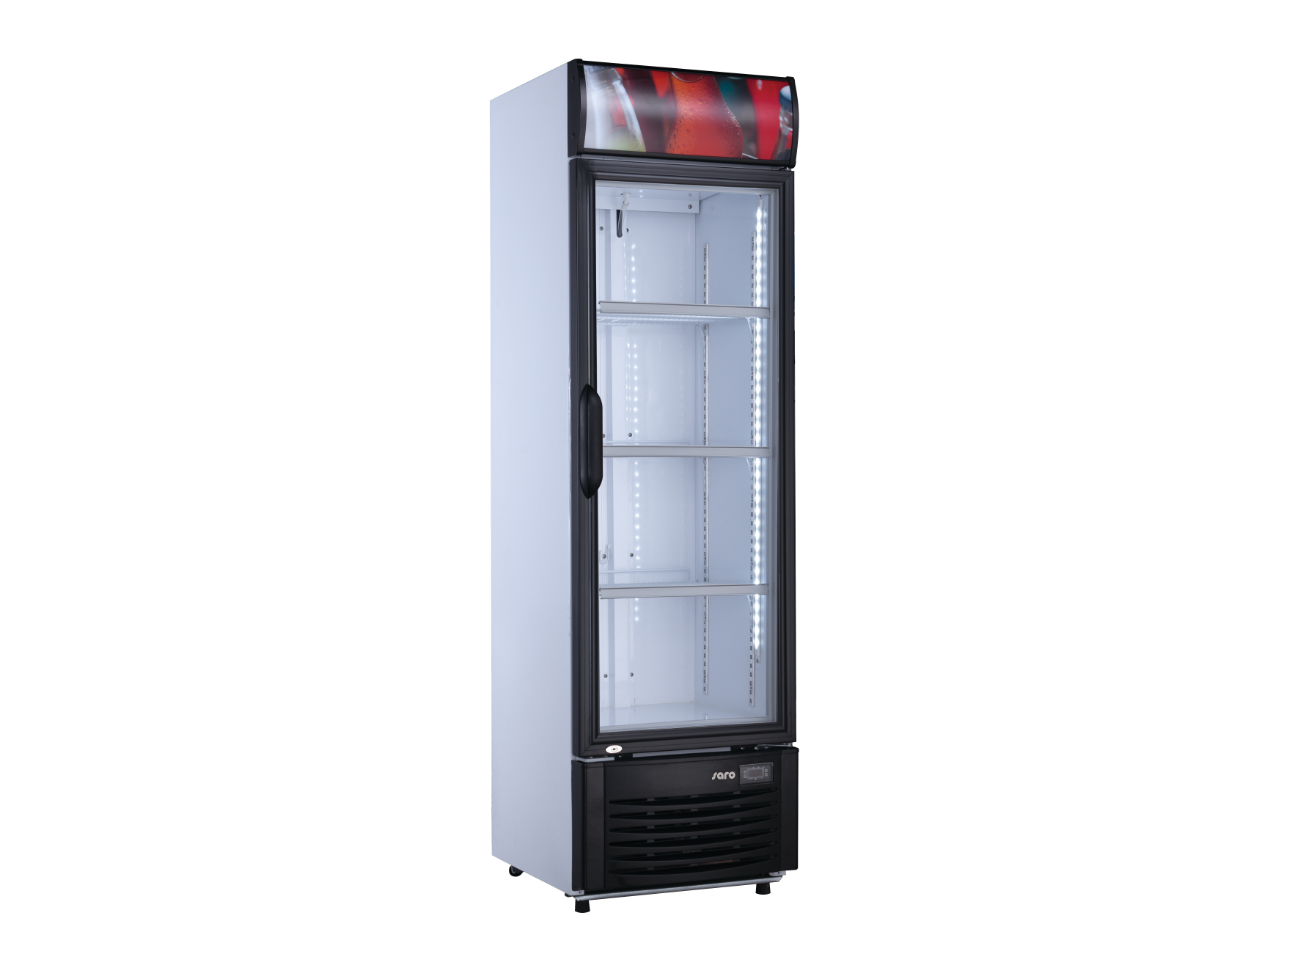 SARO Getränkekühlschrank mit Werbetafel Modell GTK 282 M